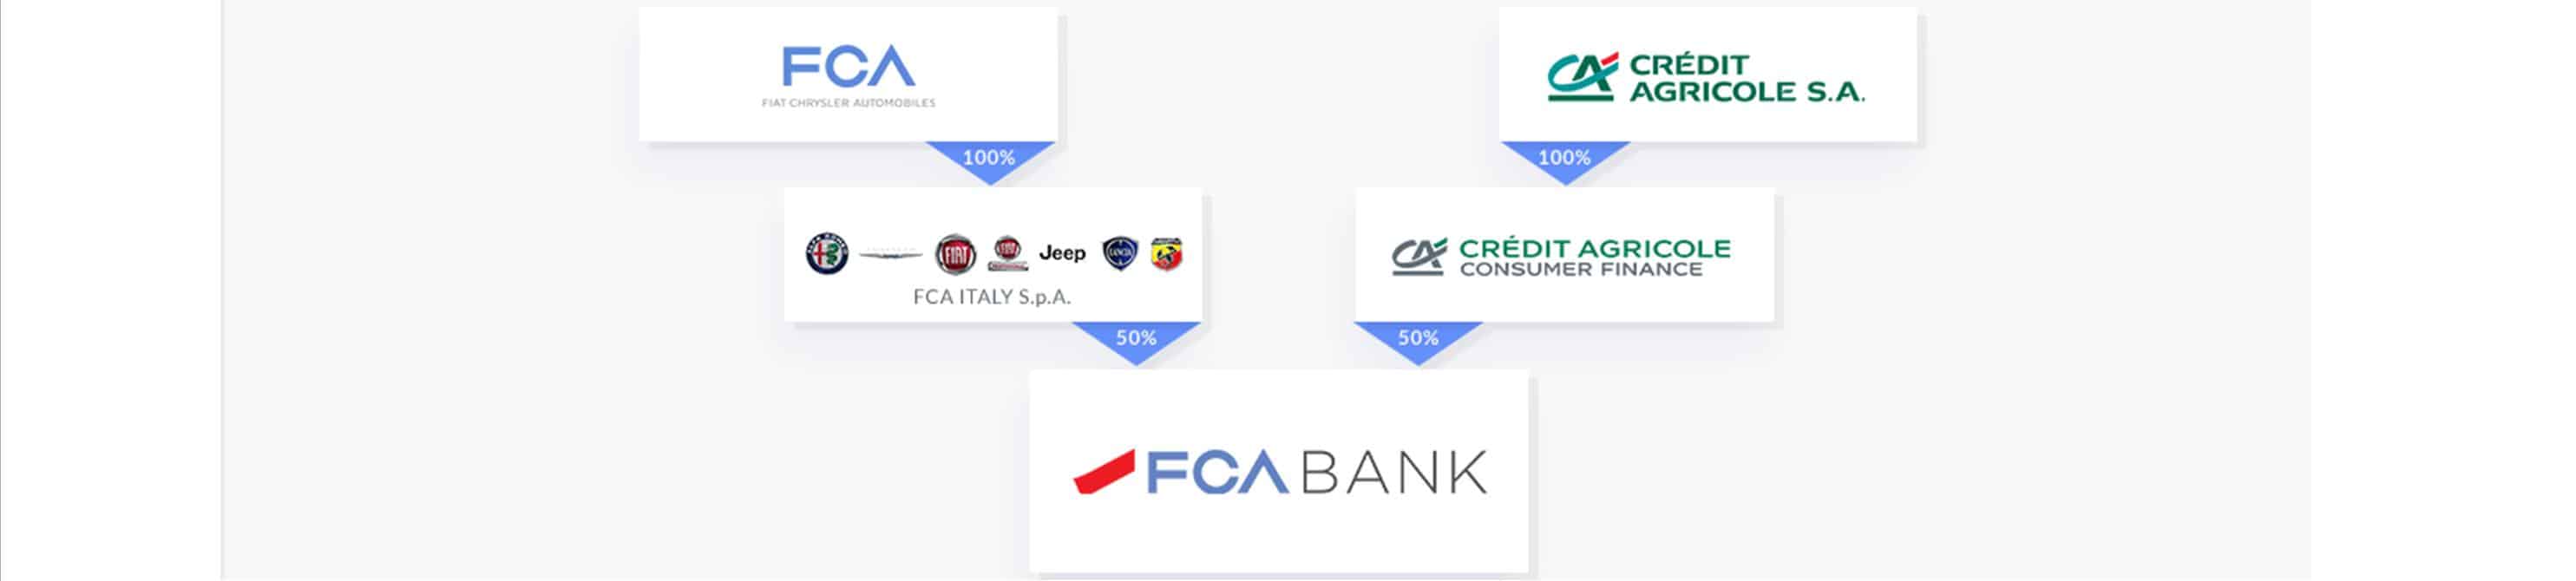 FCA Bank